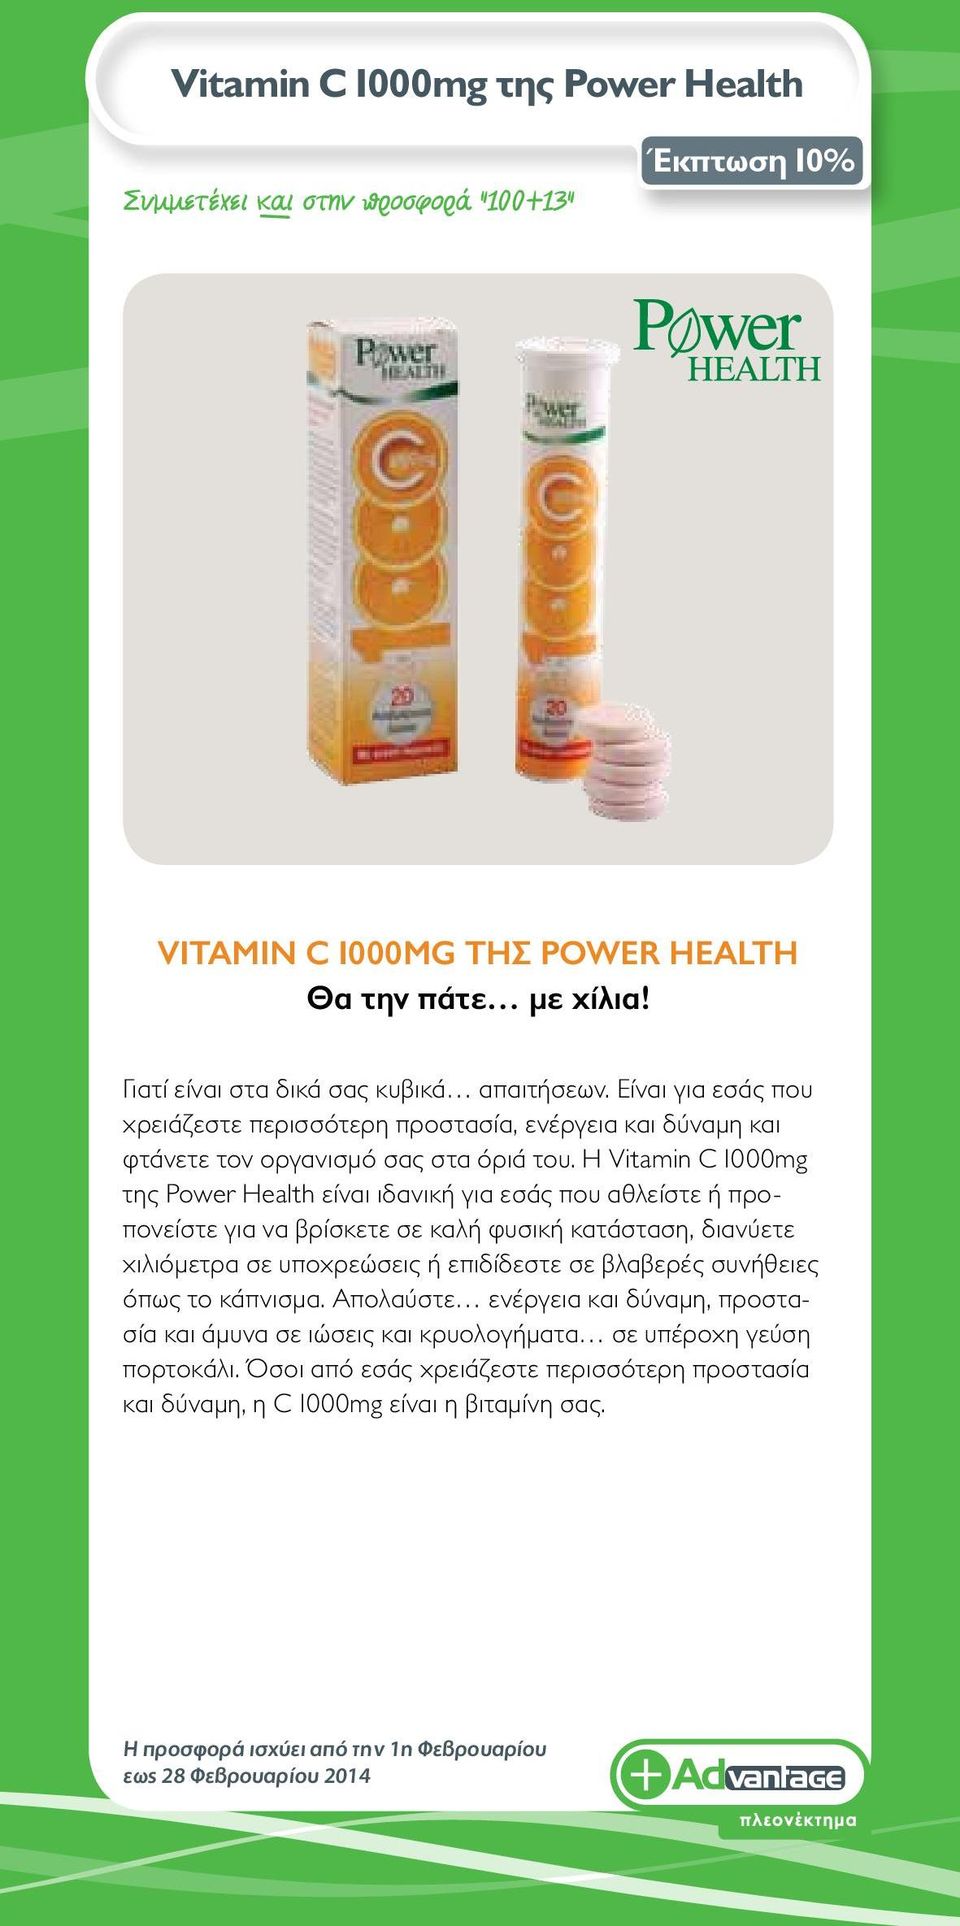 Η Vitamin C 1000mg της Power Health είναι ιδανική για εσάς που αθλείστε ή προπονείστε για να βρίσκετε σε καλή φυσική κατάσταση, διανύετε χιλιόμετρα σε υποχρεώσεις ή επιδίδεστε σε βλαβερές